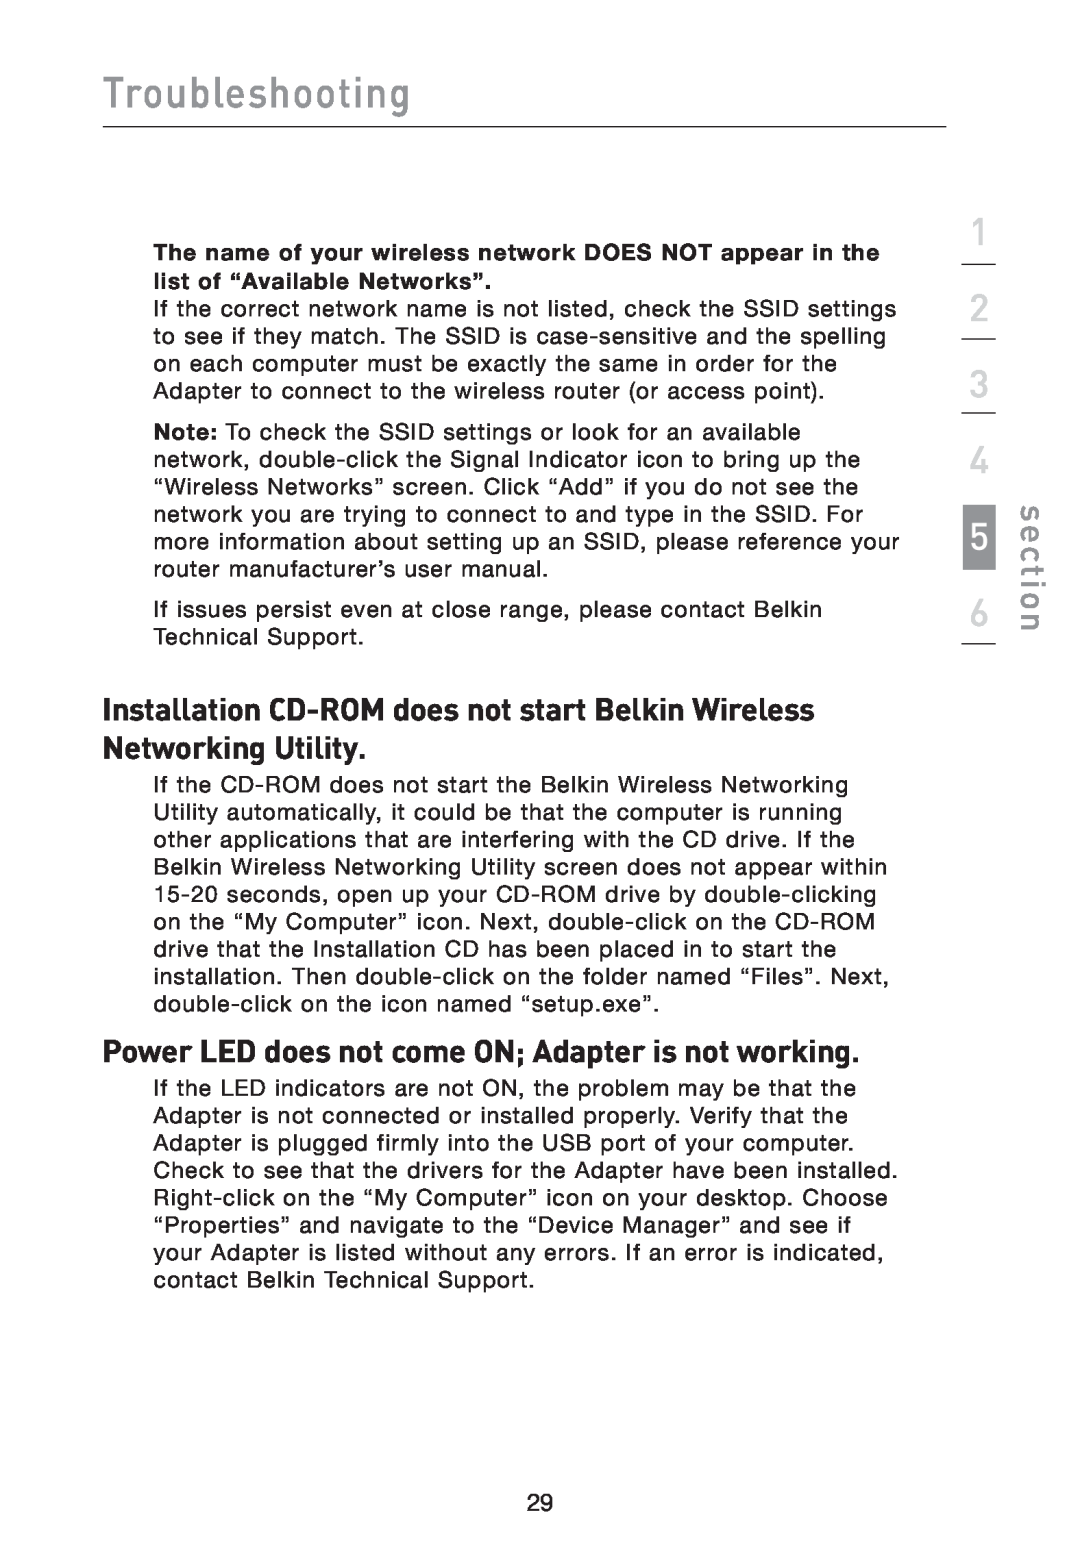 Belkin F5D9050 user manual Installation CD-ROM does not start Belkin Wireless Networking Utility, Troubleshooting, section 